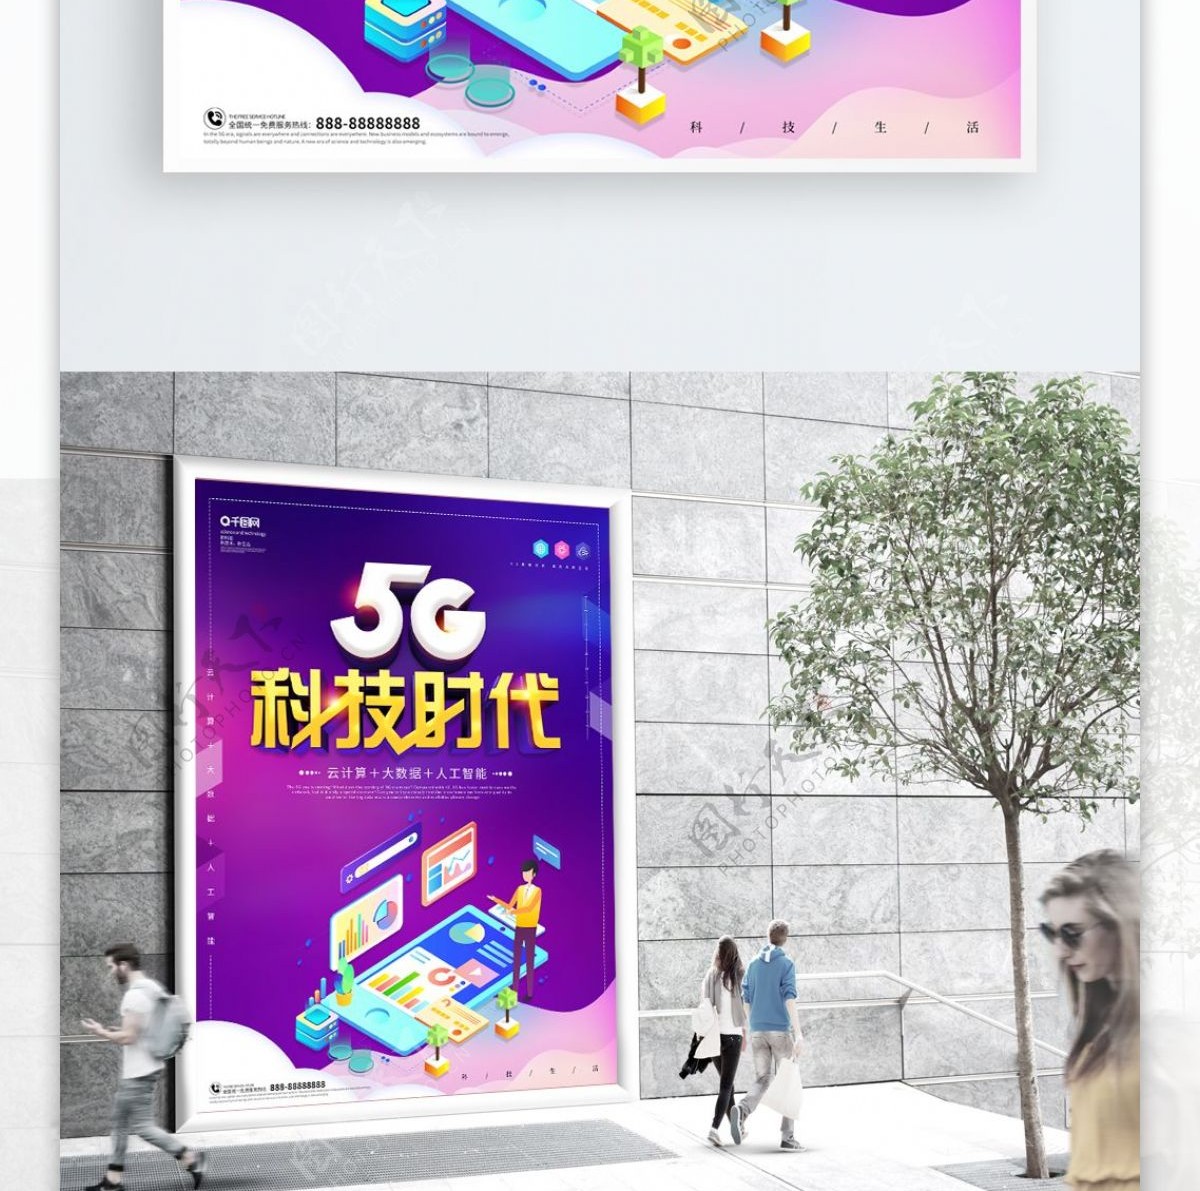 创新5G科技时代科技宣传海报